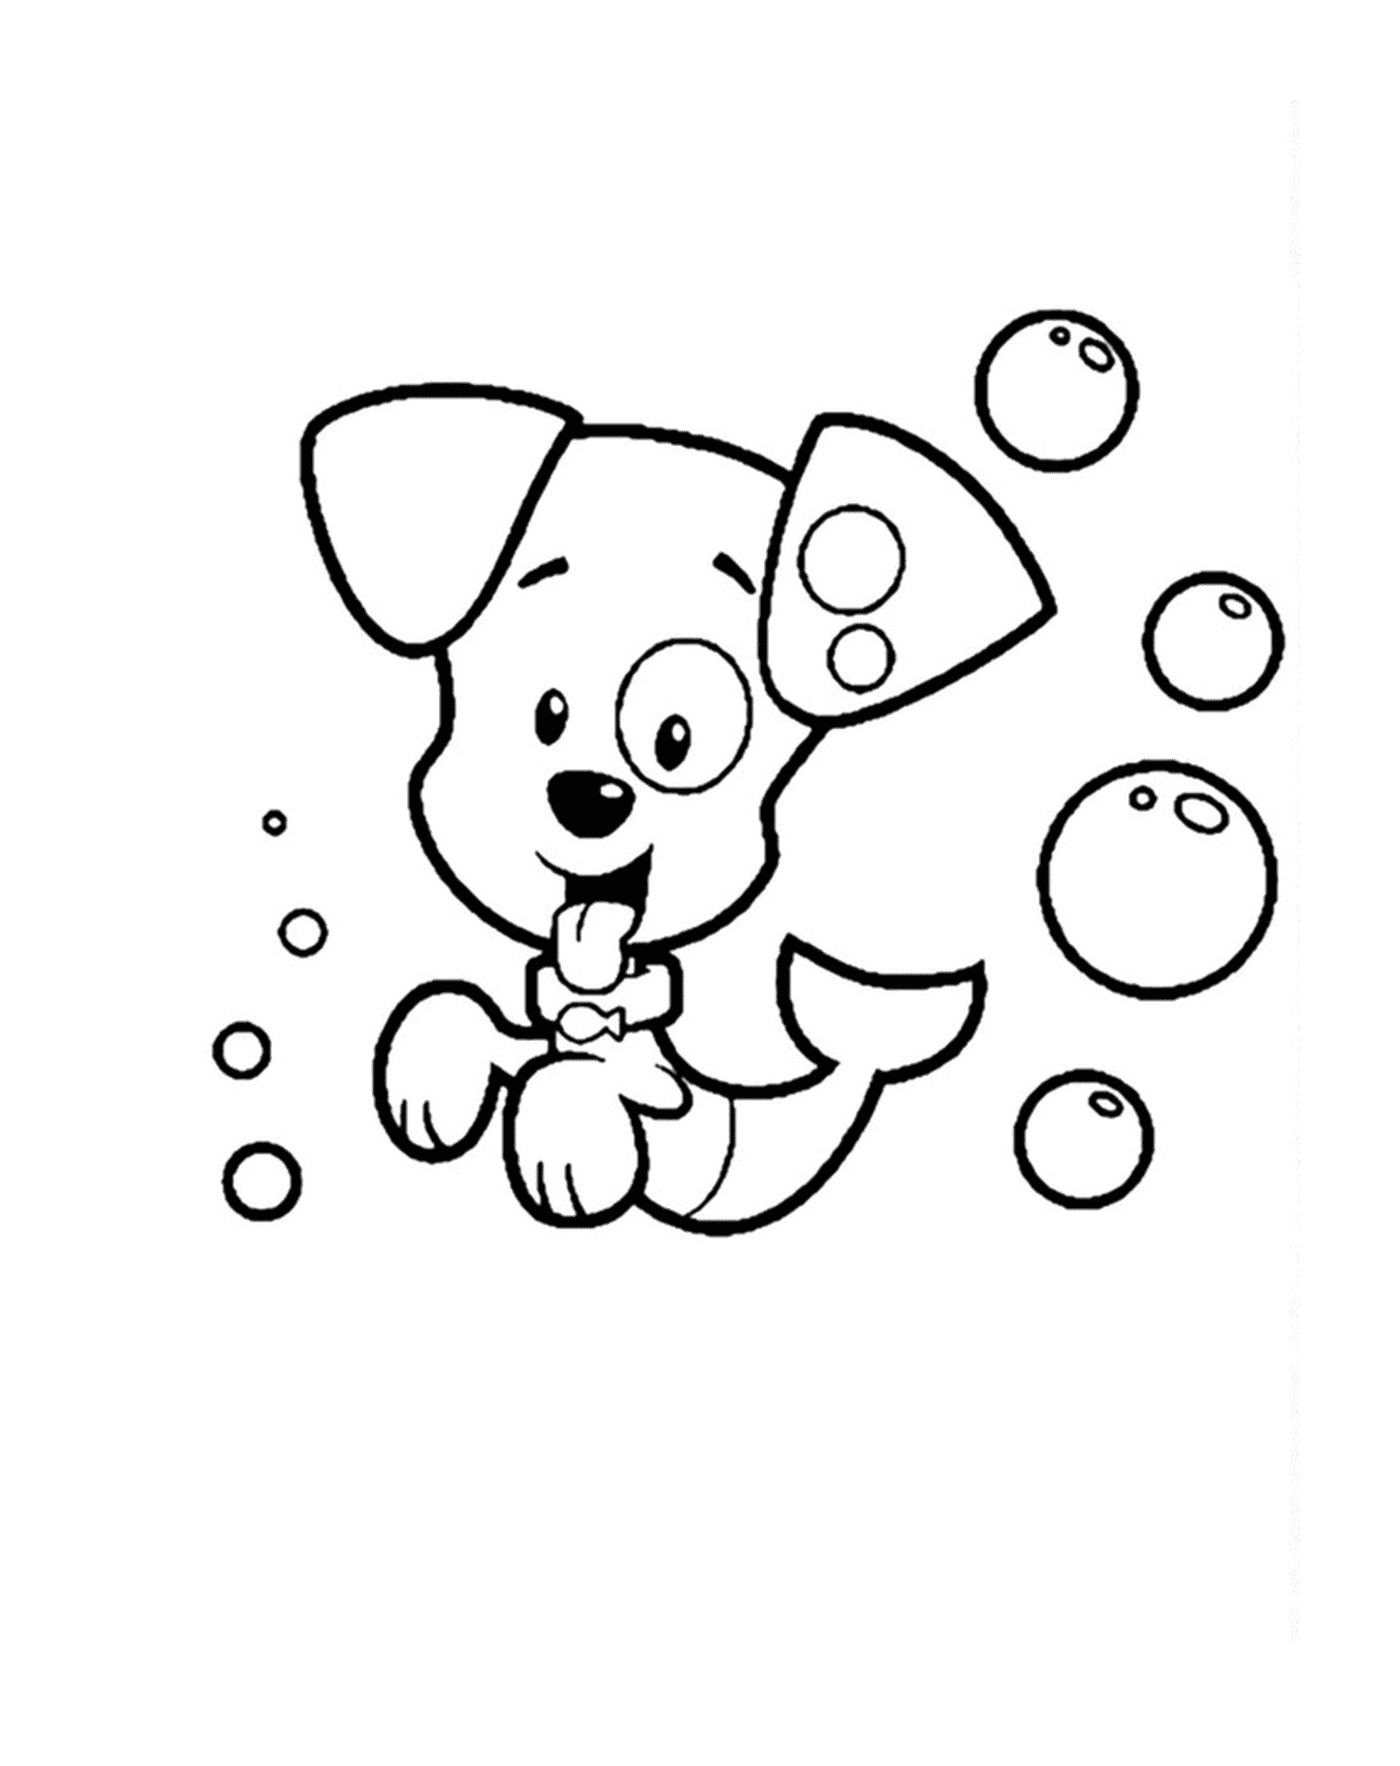   Un chien entouré de bulles 